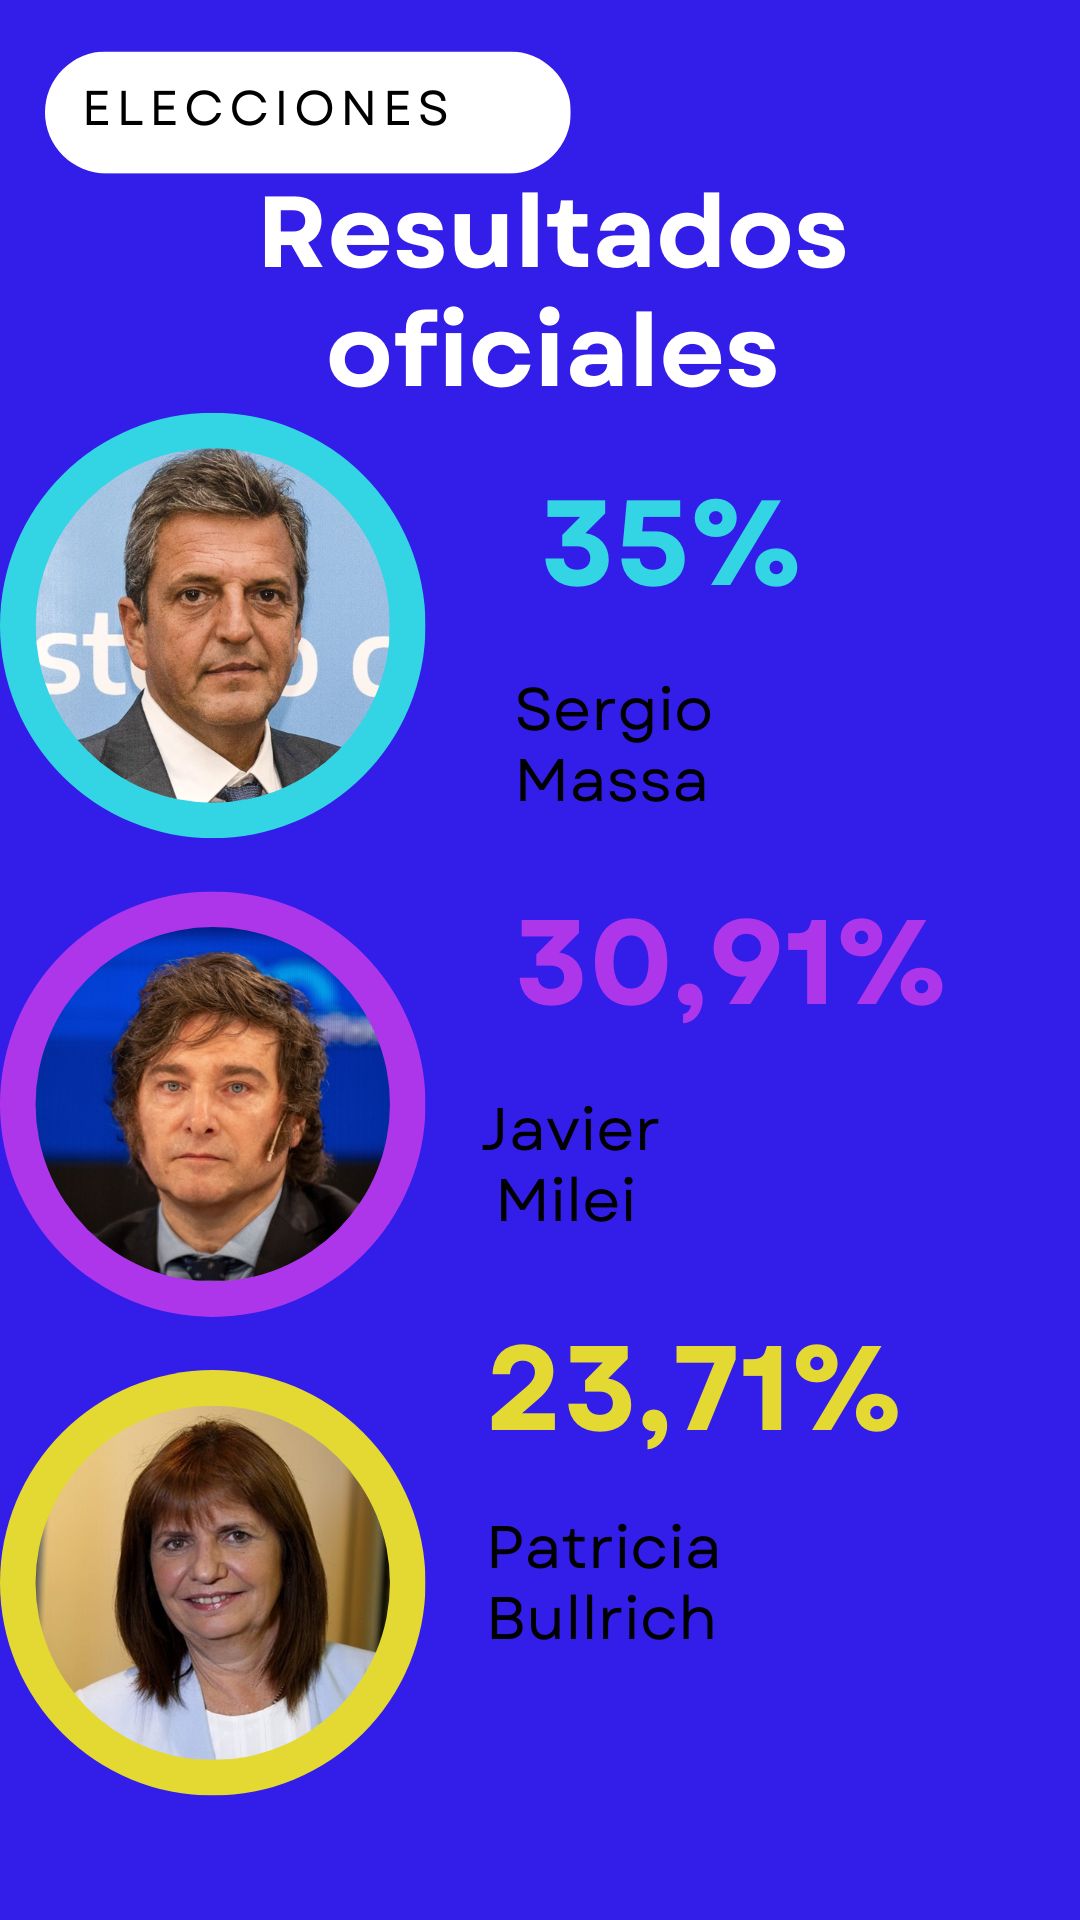 Sergio Massa es el candidato más votado de las elecciones e irá a ballotage junto a Javier Milei • Canal C